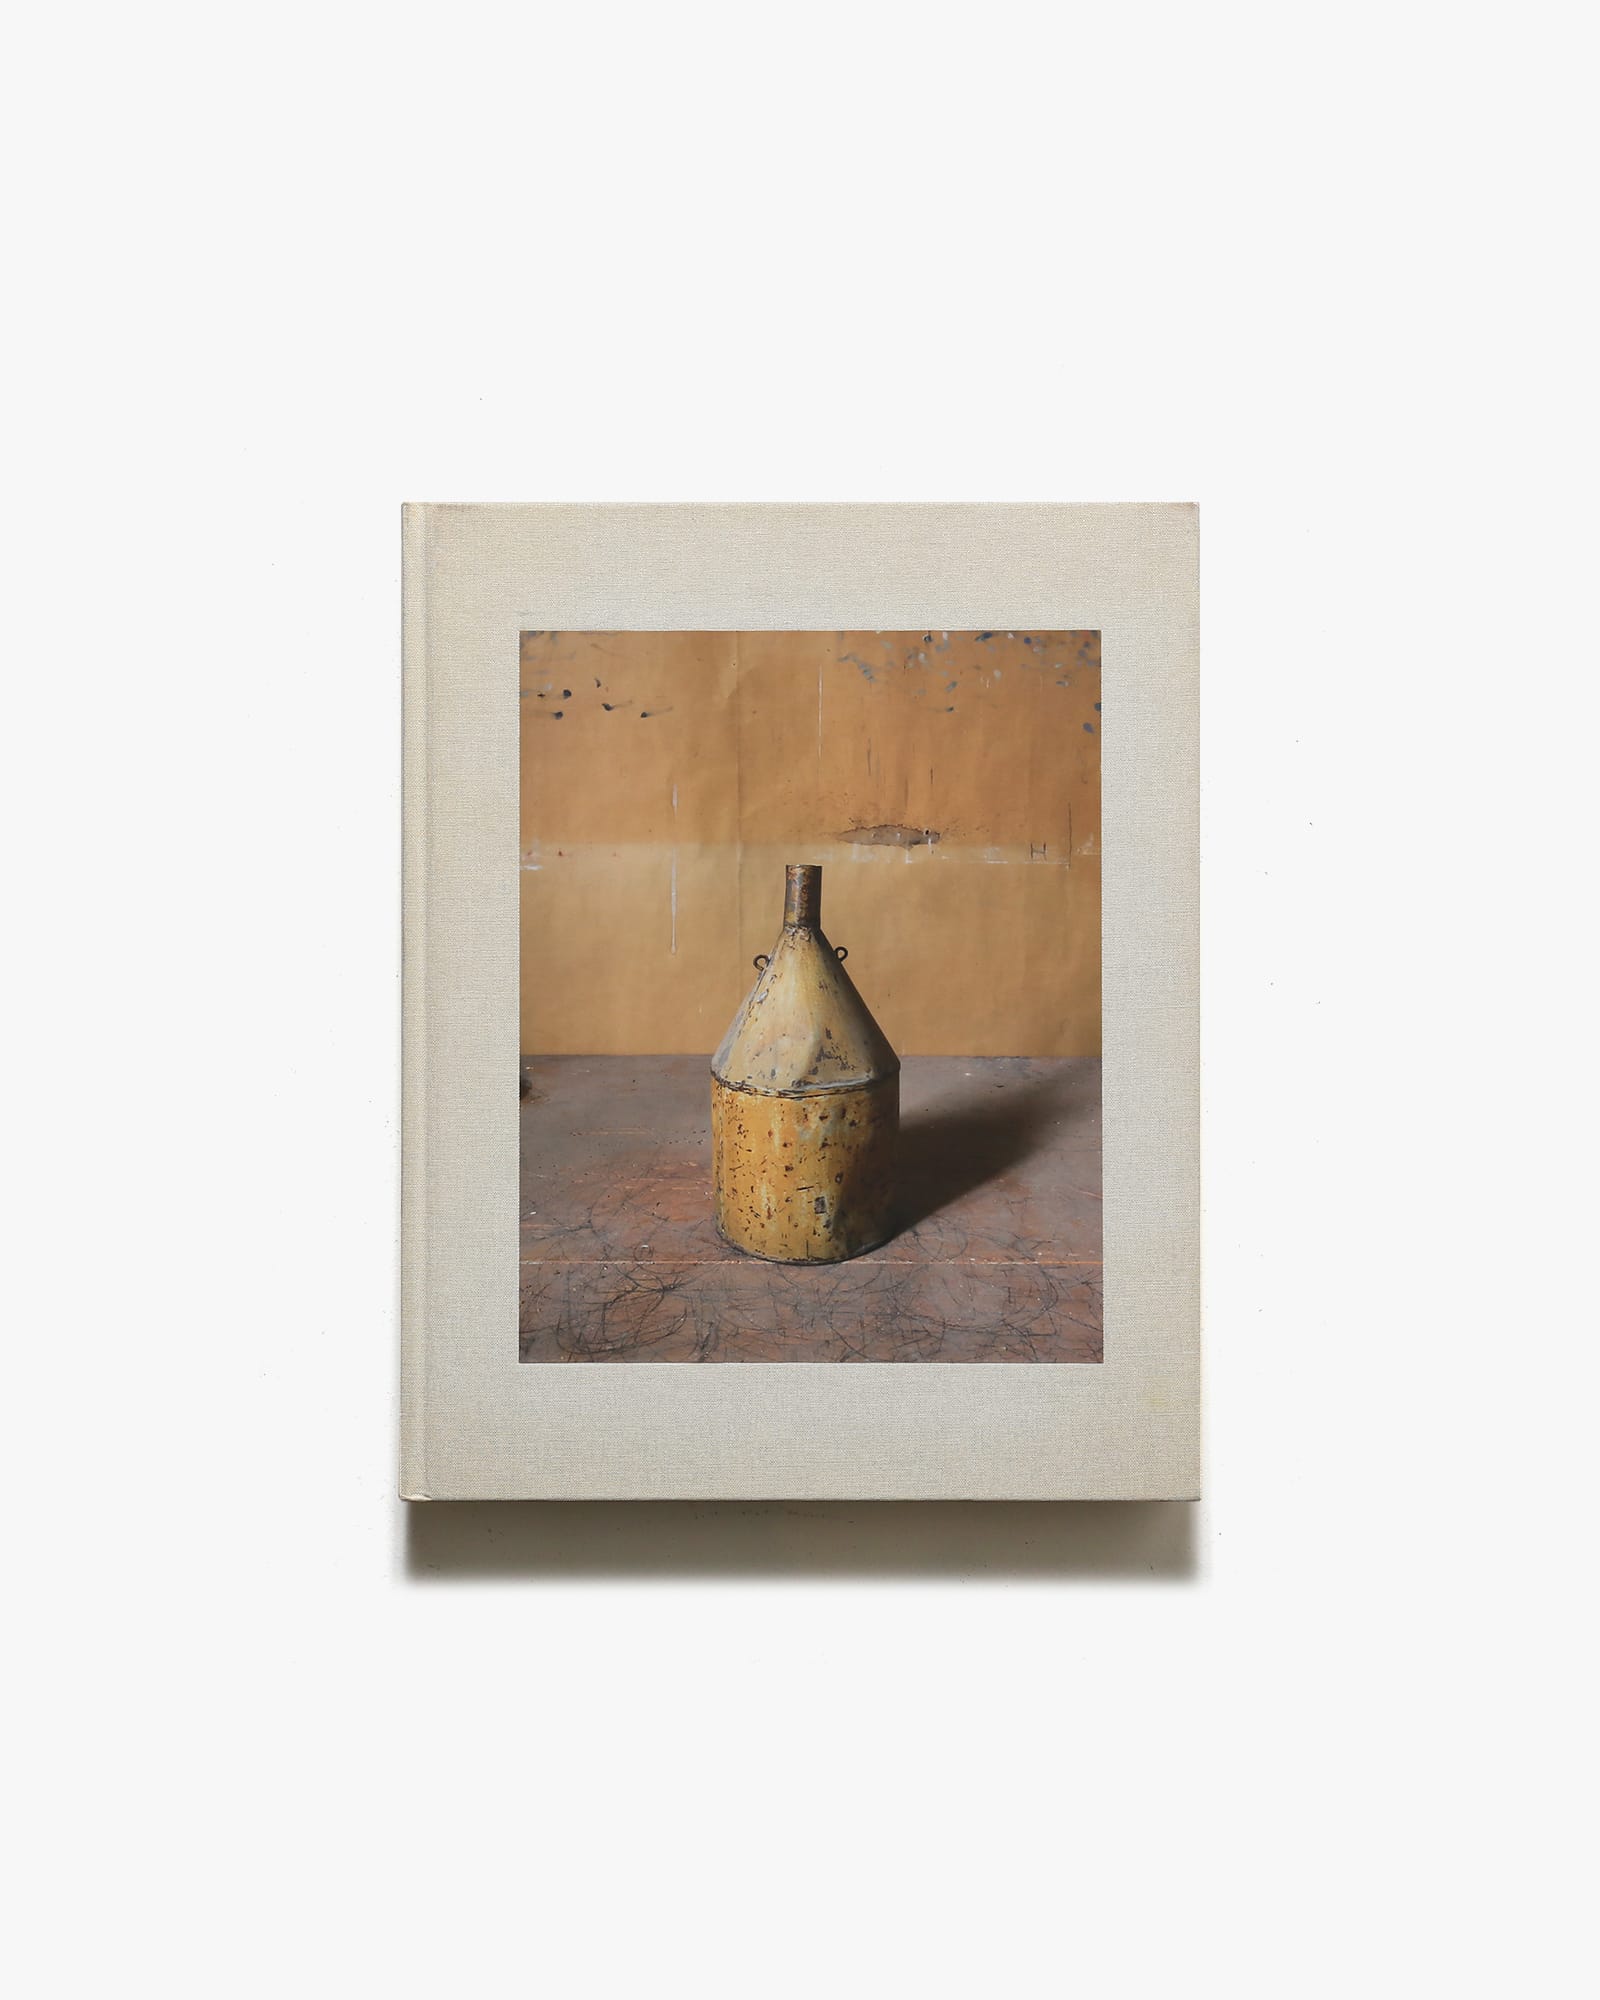 Joel Meyerowitz: Morandi’s Objects